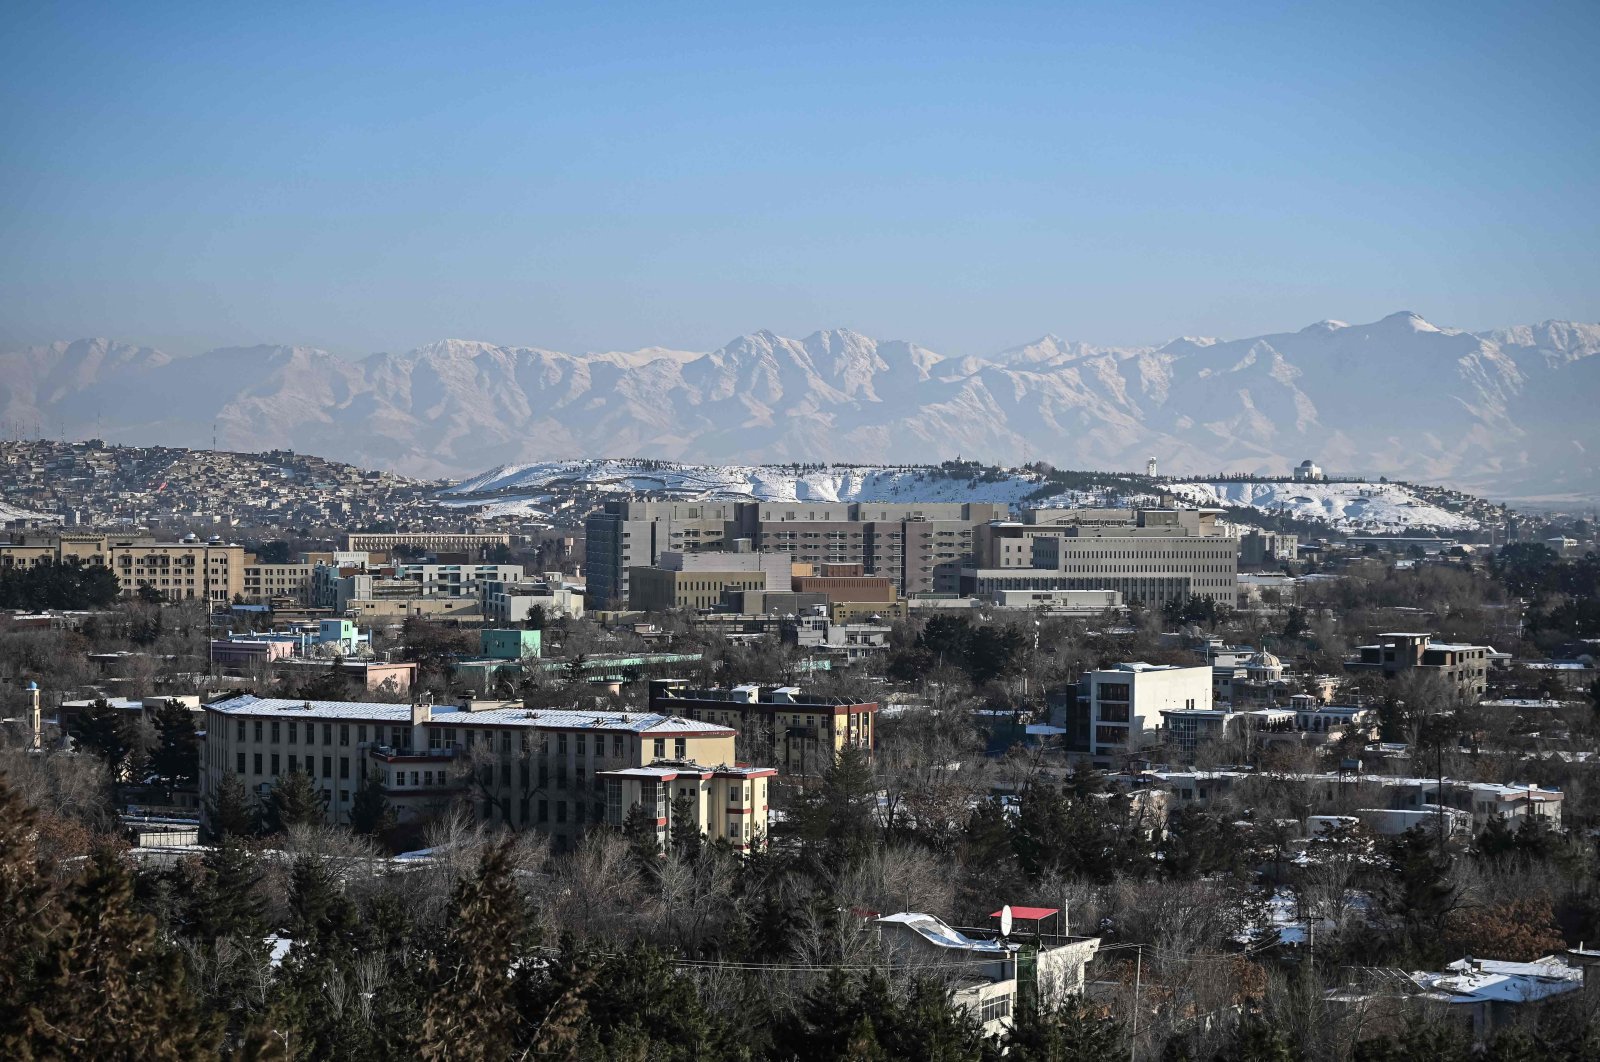 Washington, DC menjadi tuan rumah konferensi bantuan kemanusiaan dan perdamaian di Afghanistan